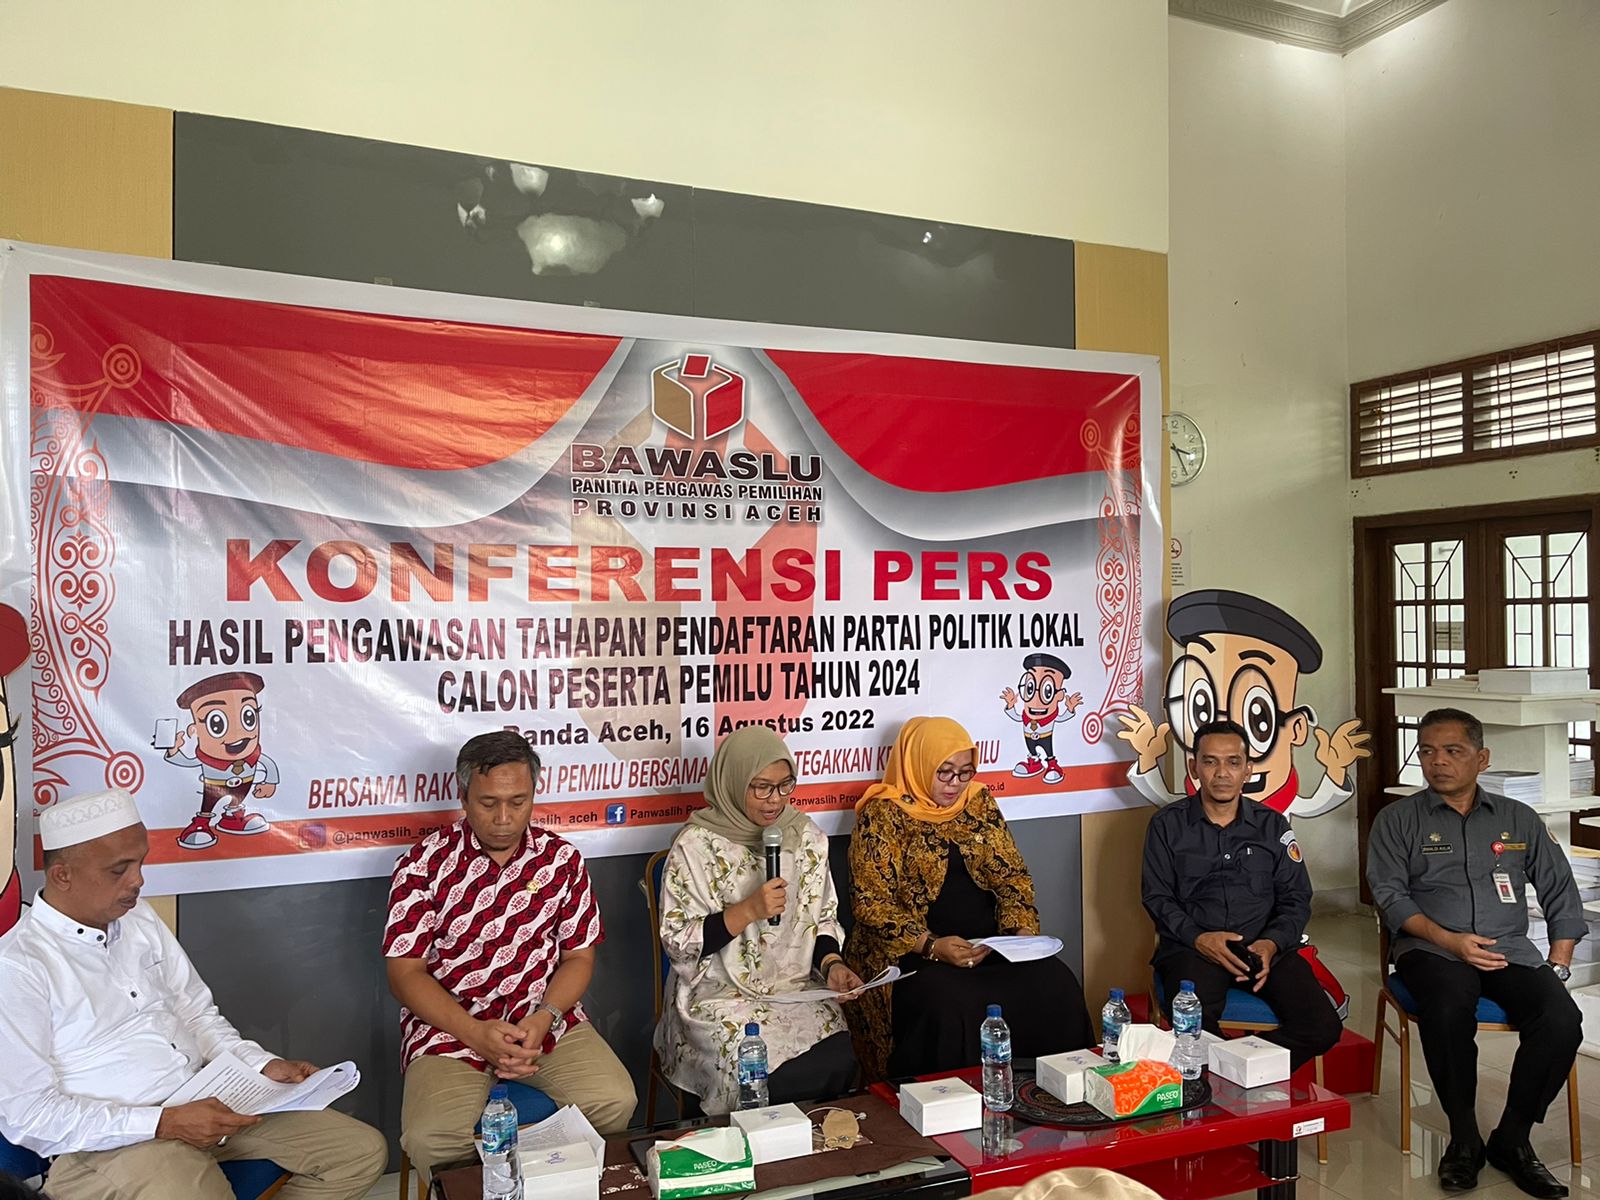 Ini Hasil Temuan Pengawasan Panwaslih Provinsi Aceh Selama Pendaftaran Parlok di KIP